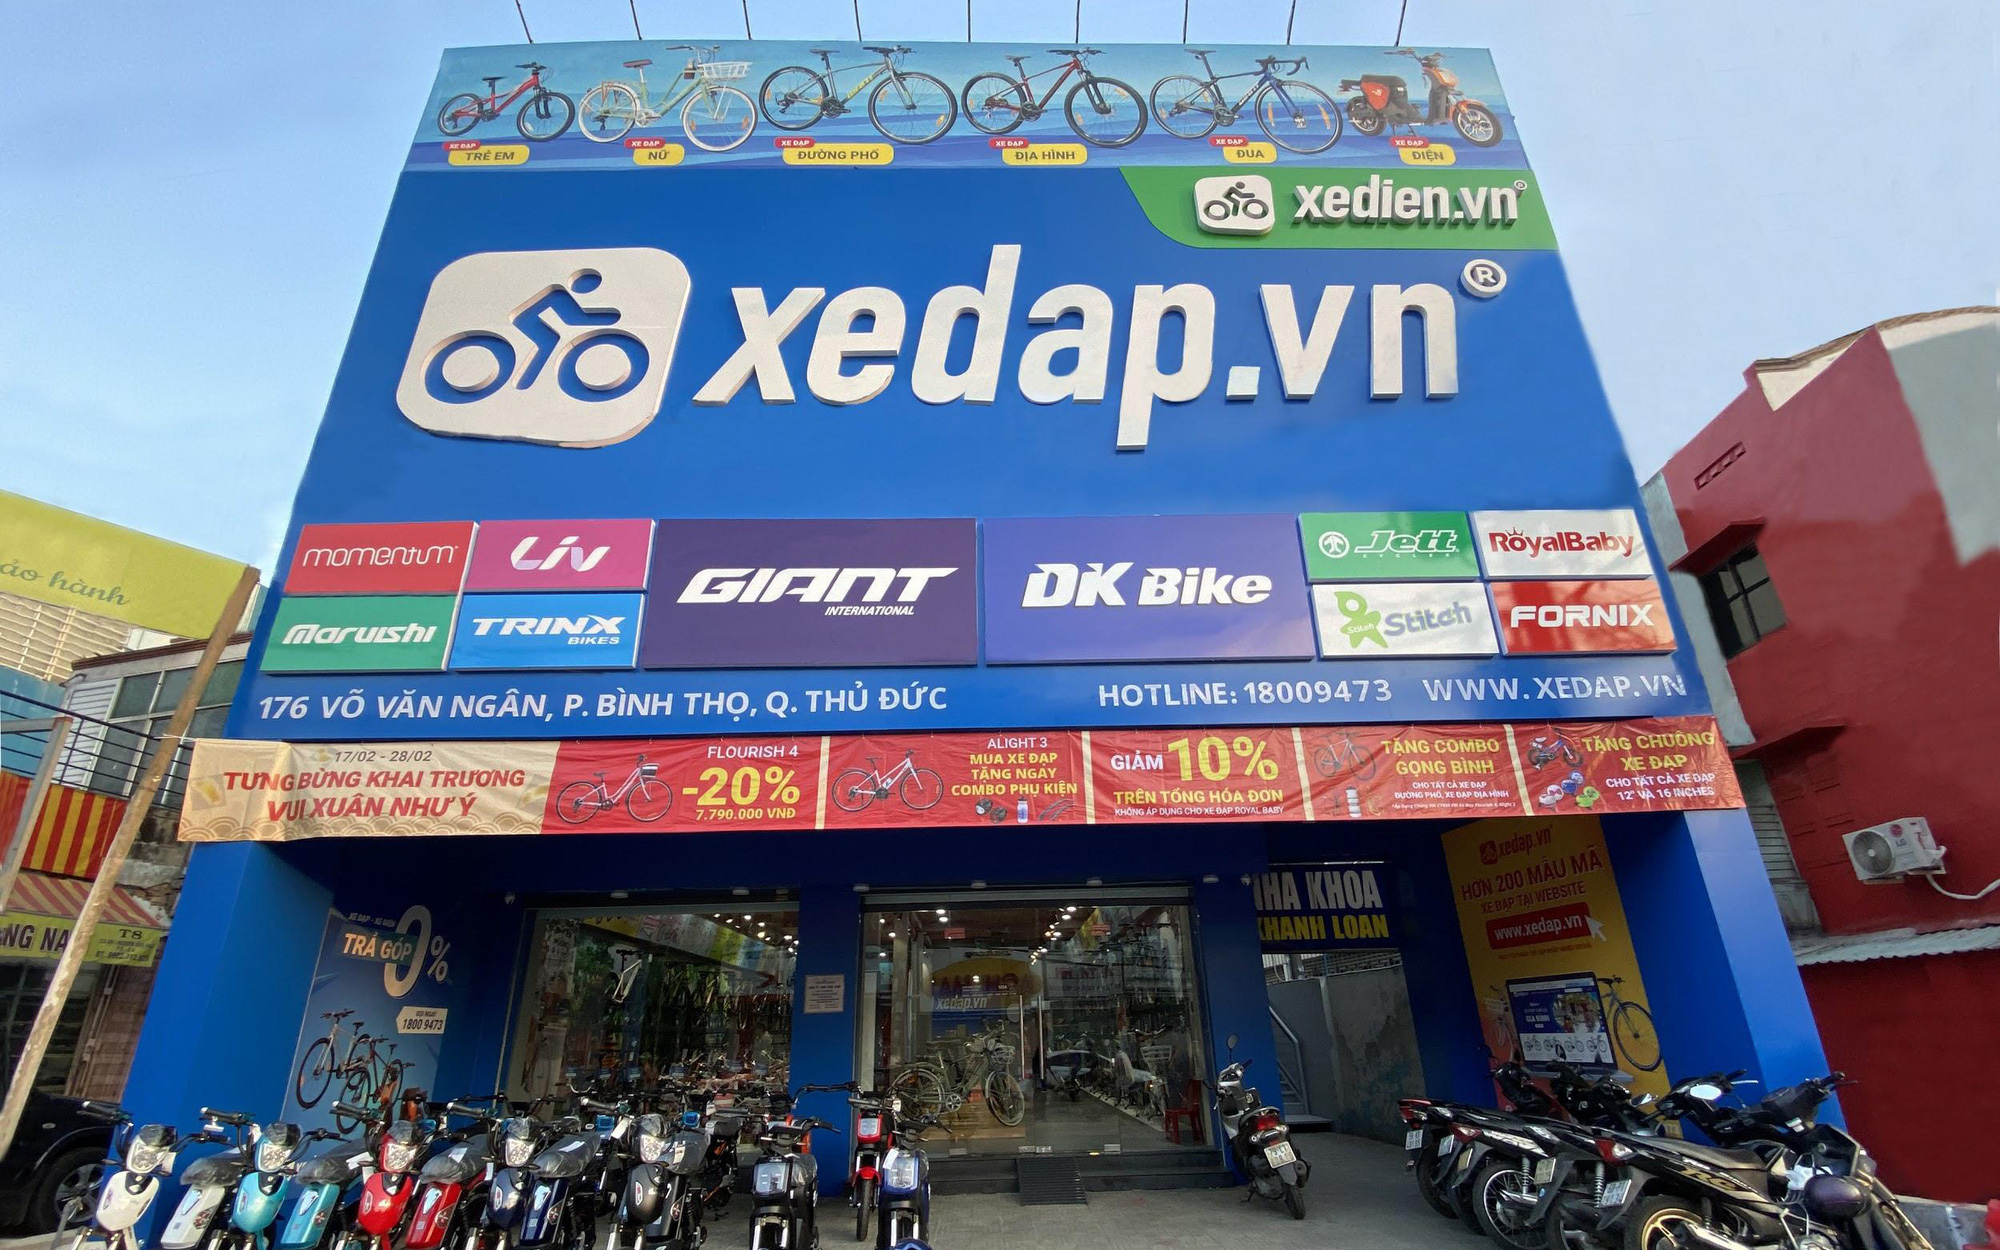 Hệ thống Xedap.vn đổ bộ con phố mua sắm sầm uất tại Thủ Đức và Quận 9